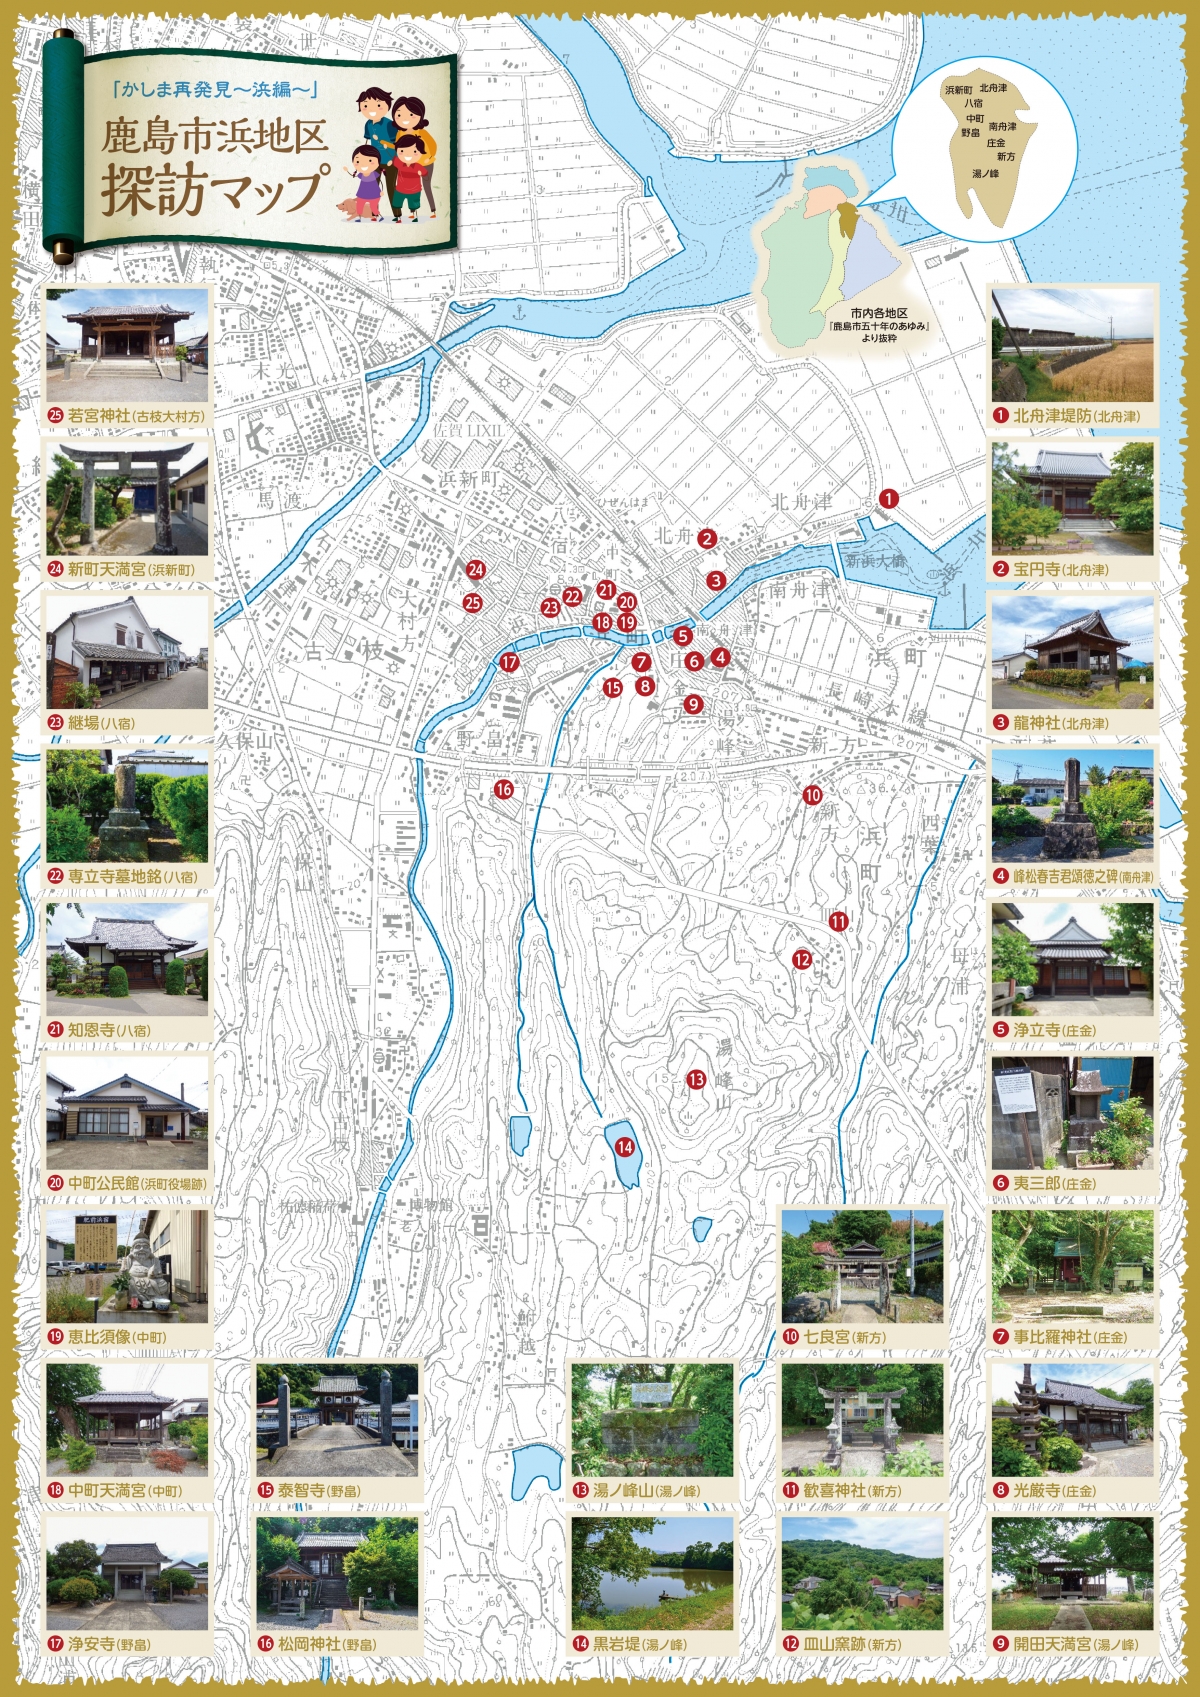 鹿島市 浜地区 探訪マップ 表 